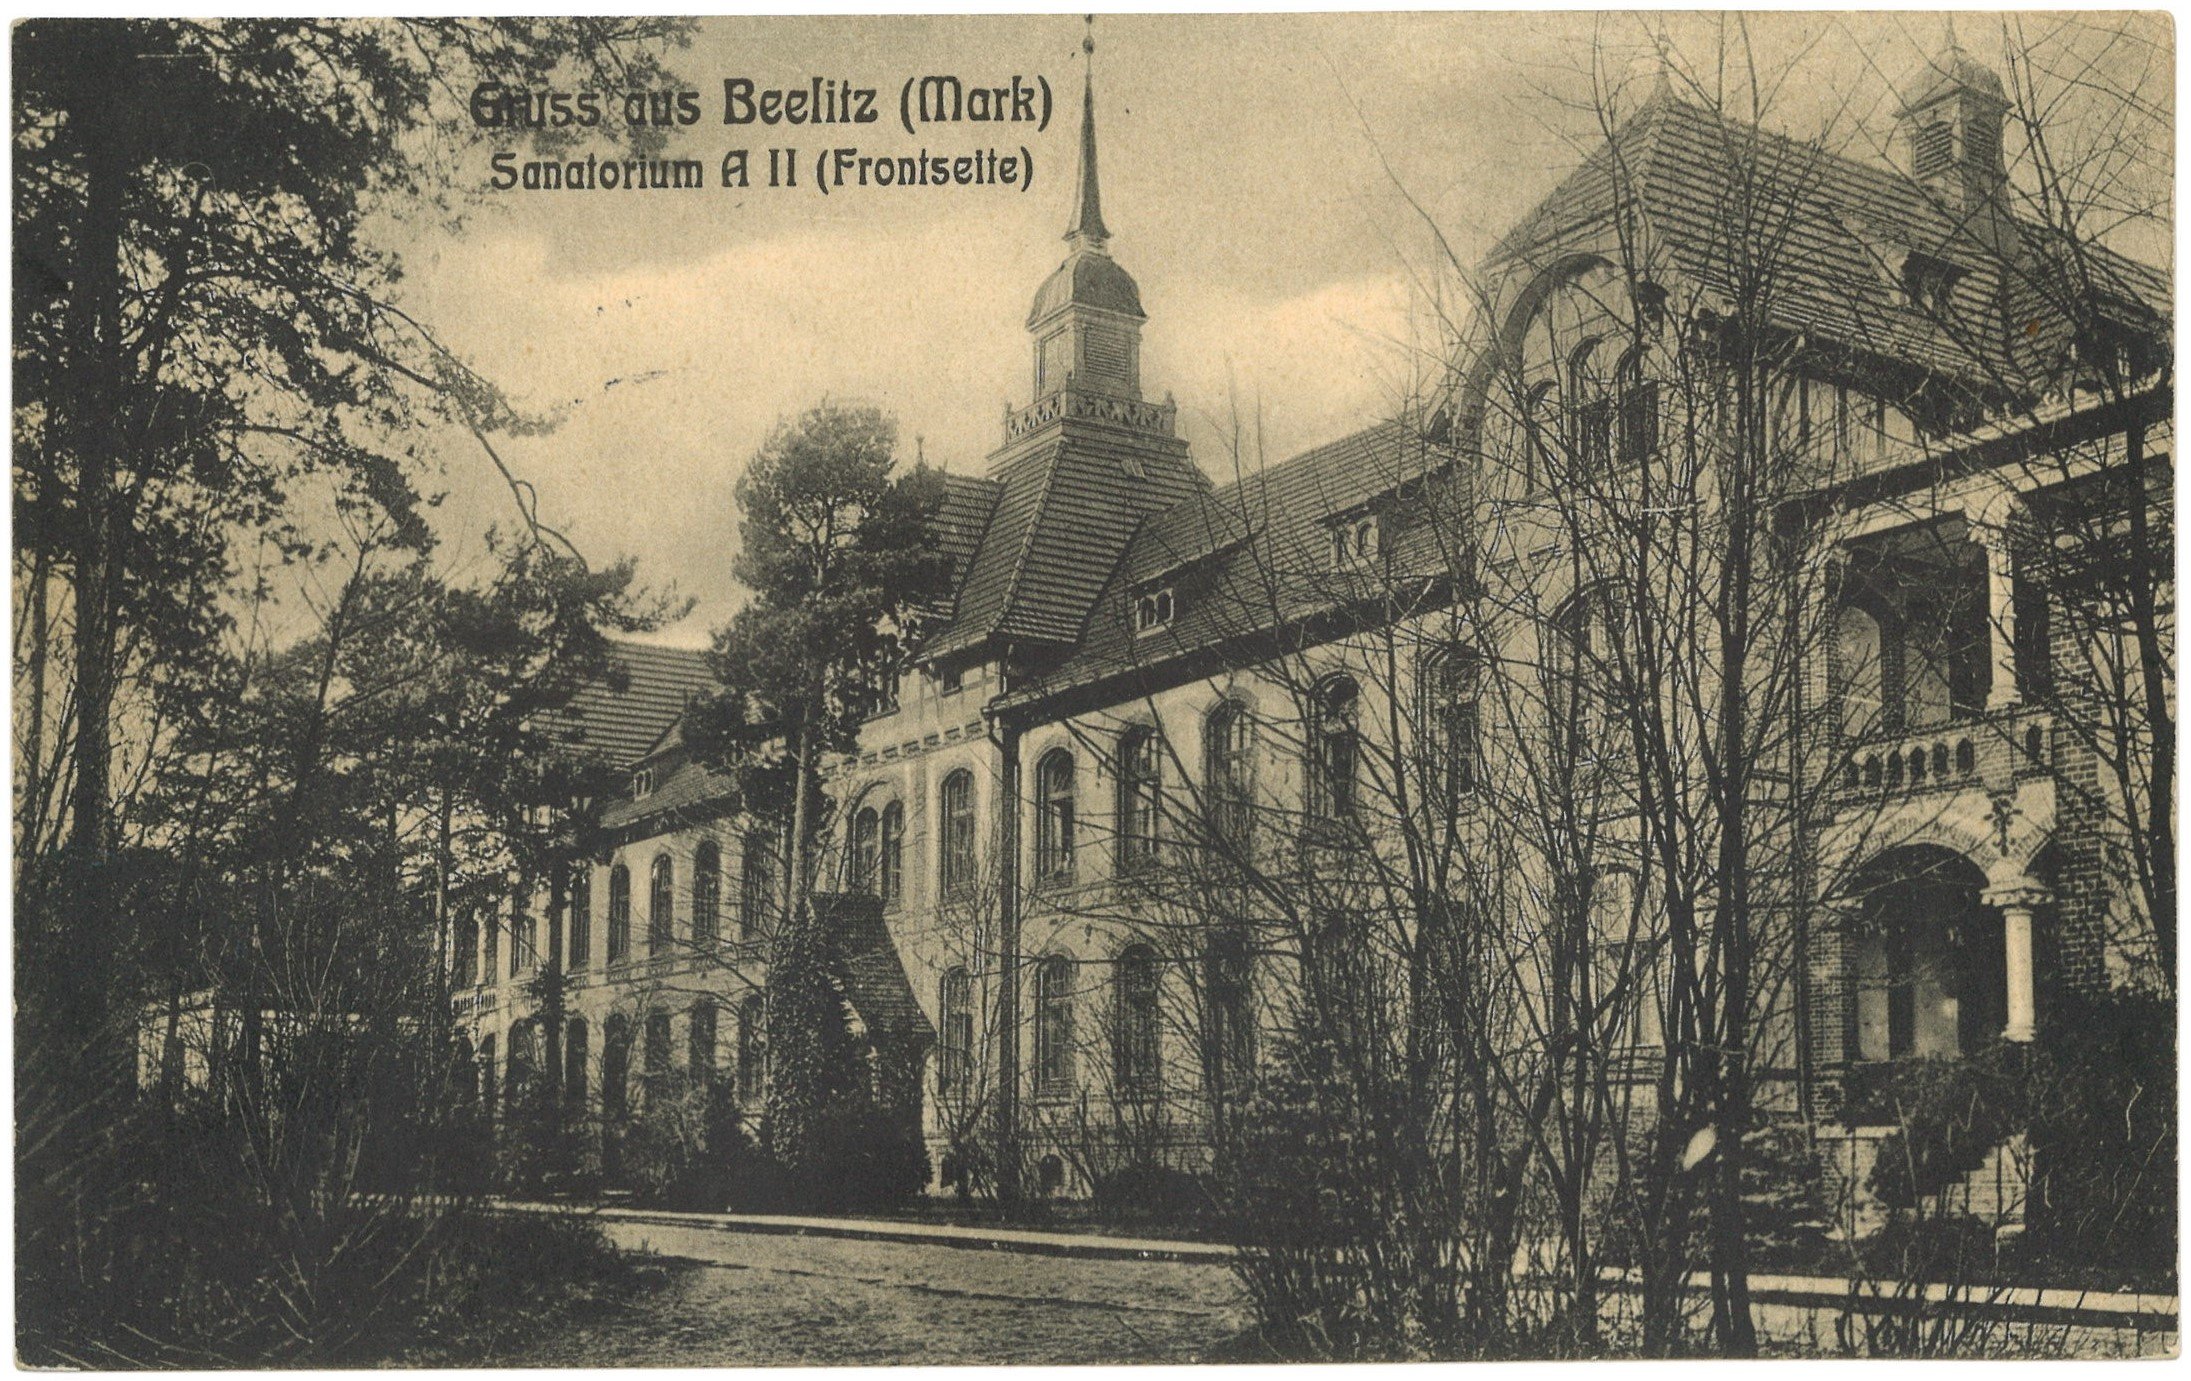 Beelitz-Heilstätten: Sanatoruium A II (Vorderseite) (Landesgeschichtliche Vereinigung für die Mark Brandenburg e.V. CC BY)